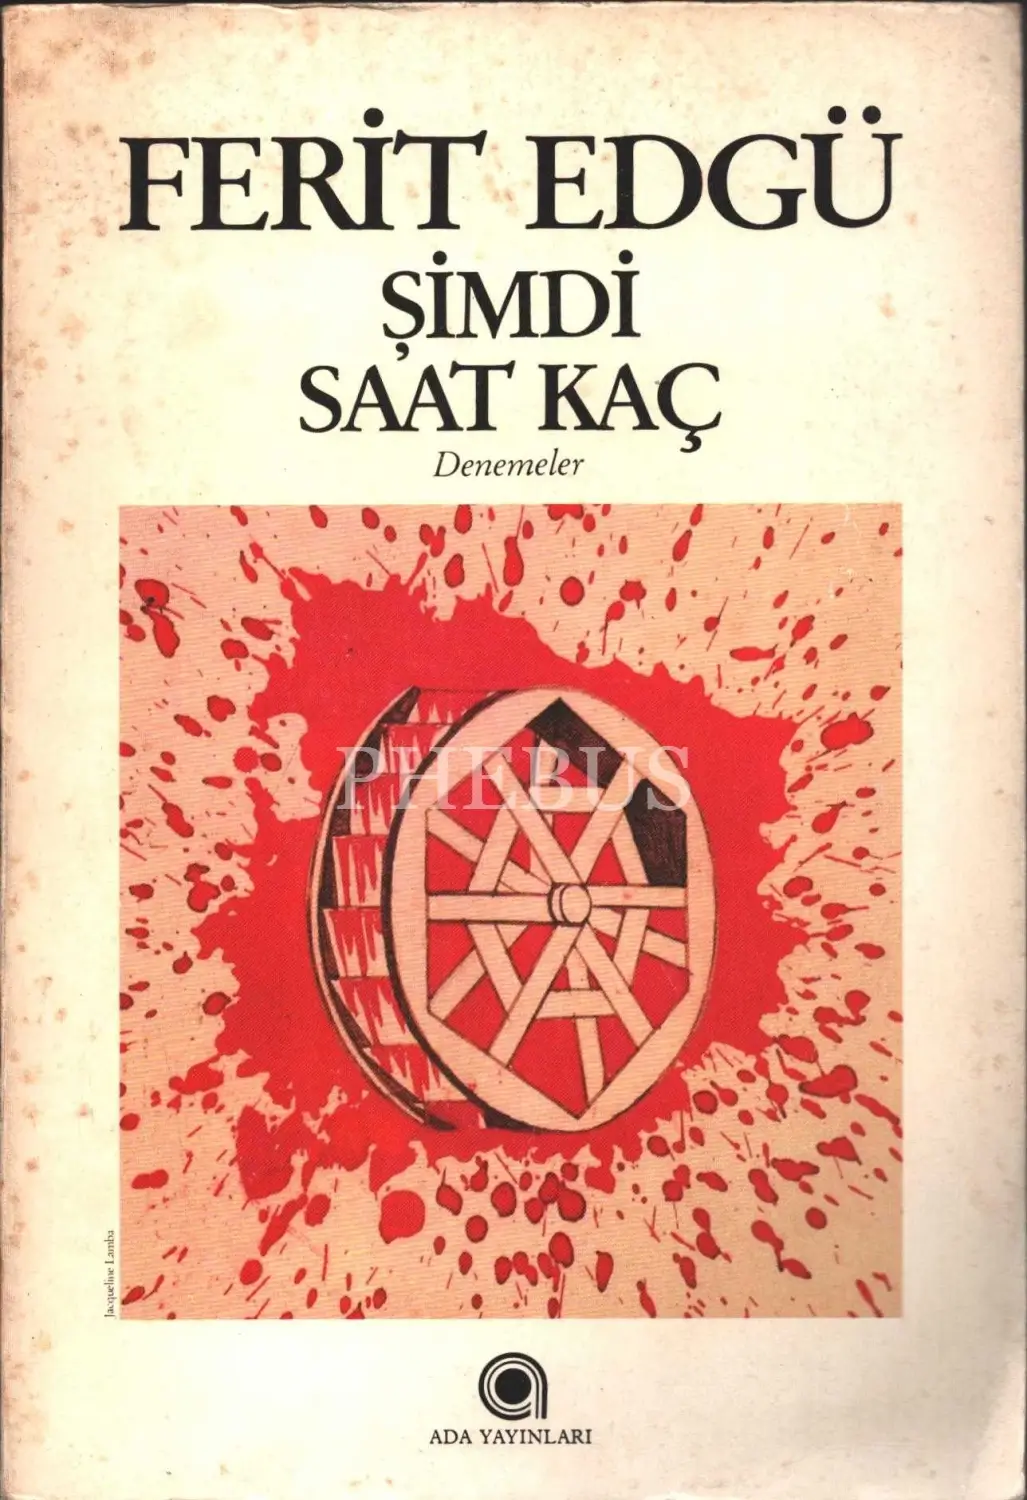 ŞİMDİ SAAT KAÇ, Refit Edgü, 1986, Ada Yayınaları, 190 sayfa...